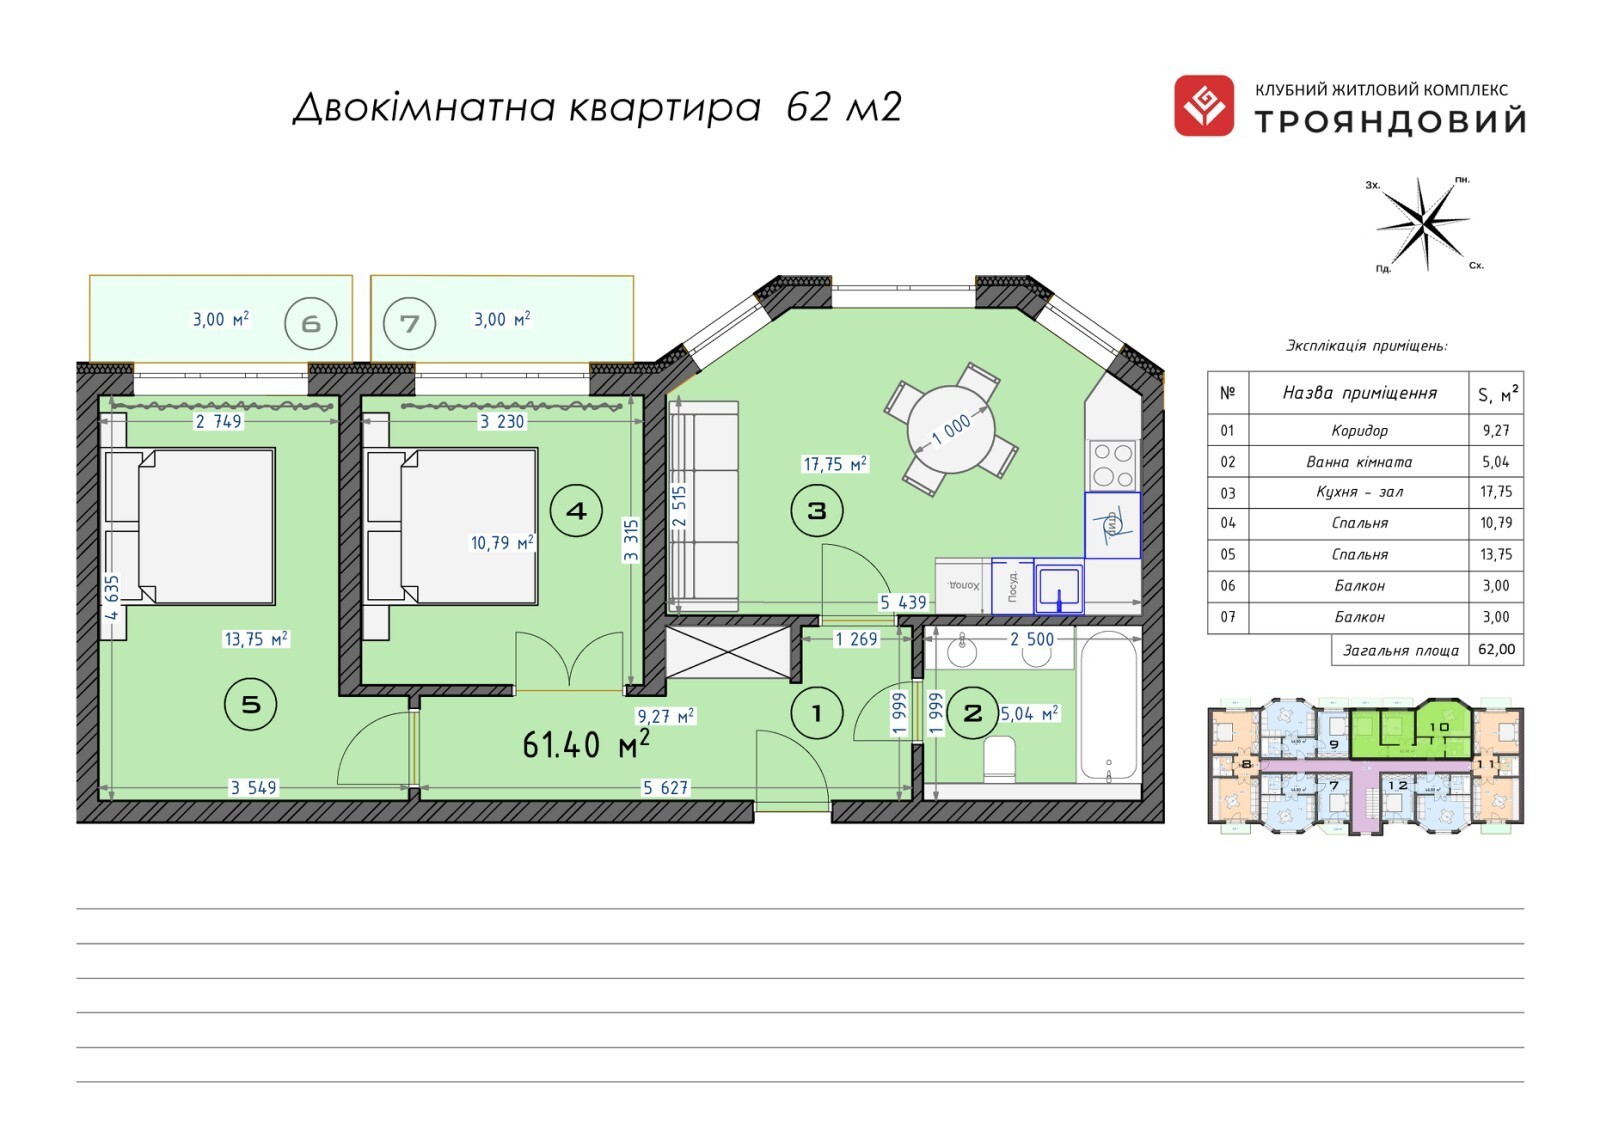 2-комнатная 61.4 м² в ЖК Трояндовый от 30 000 грн/м², г. Бровары